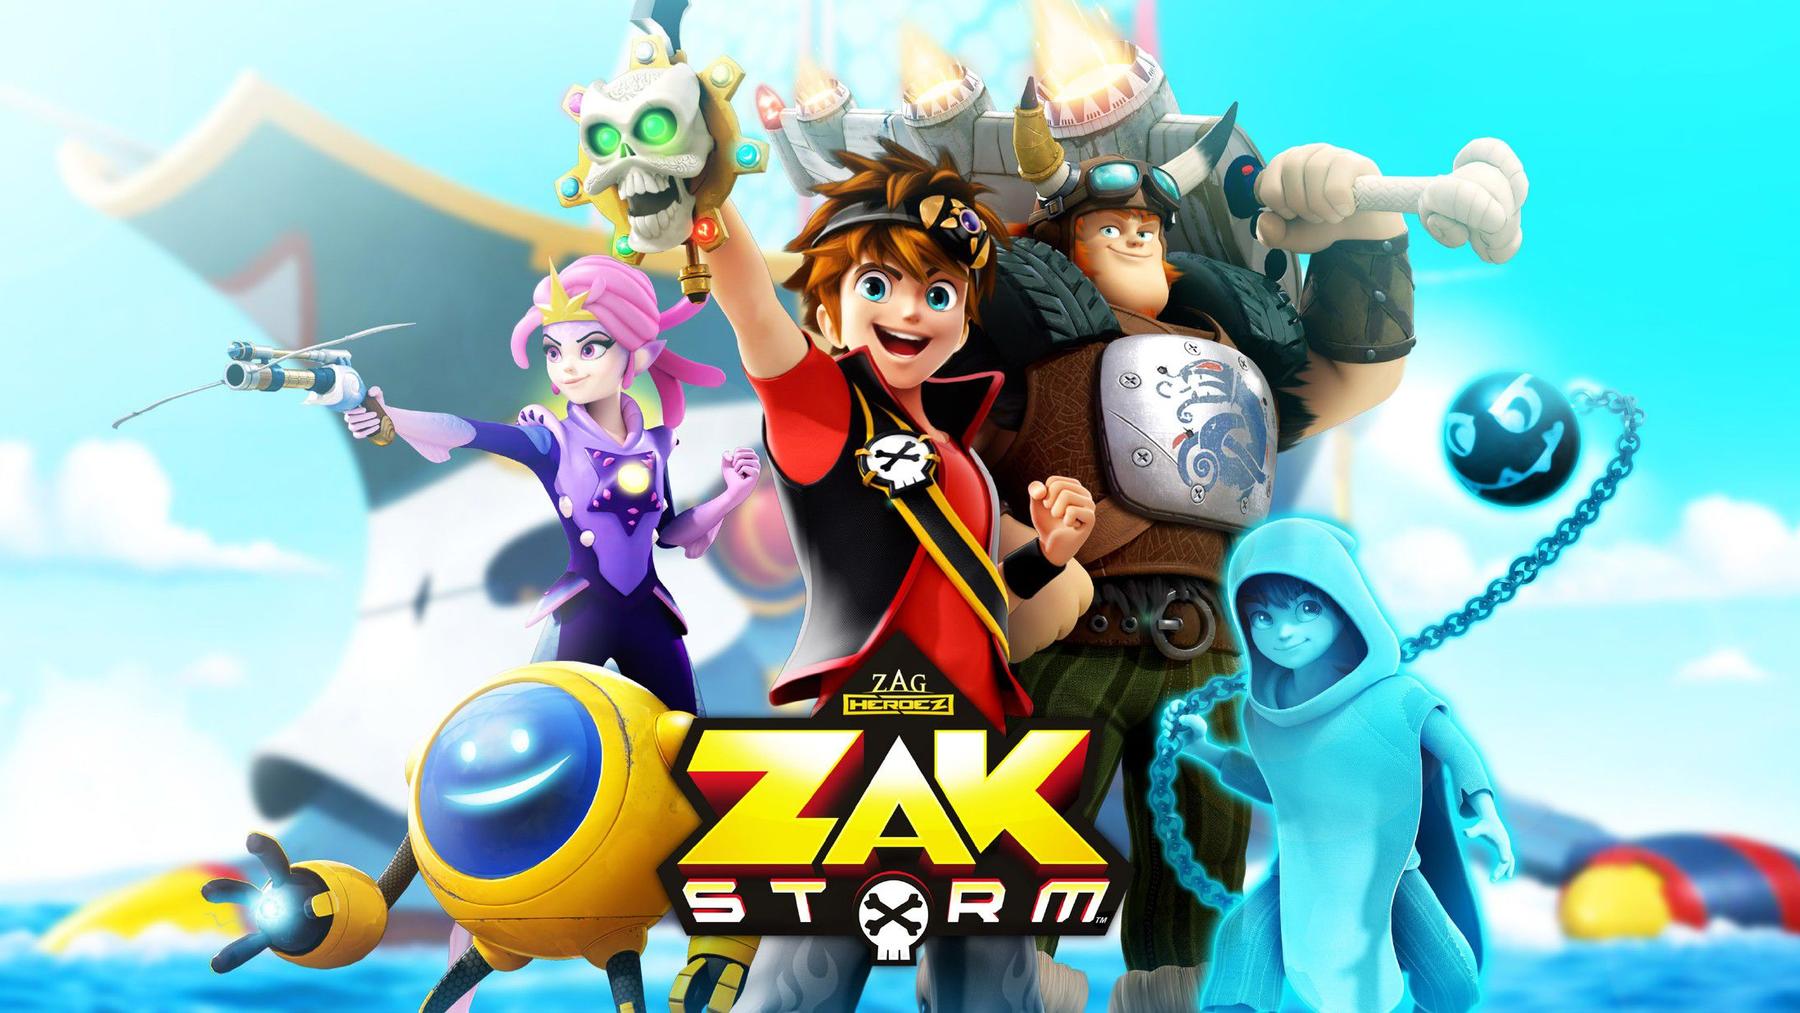 Zak Storm - Super Pirat